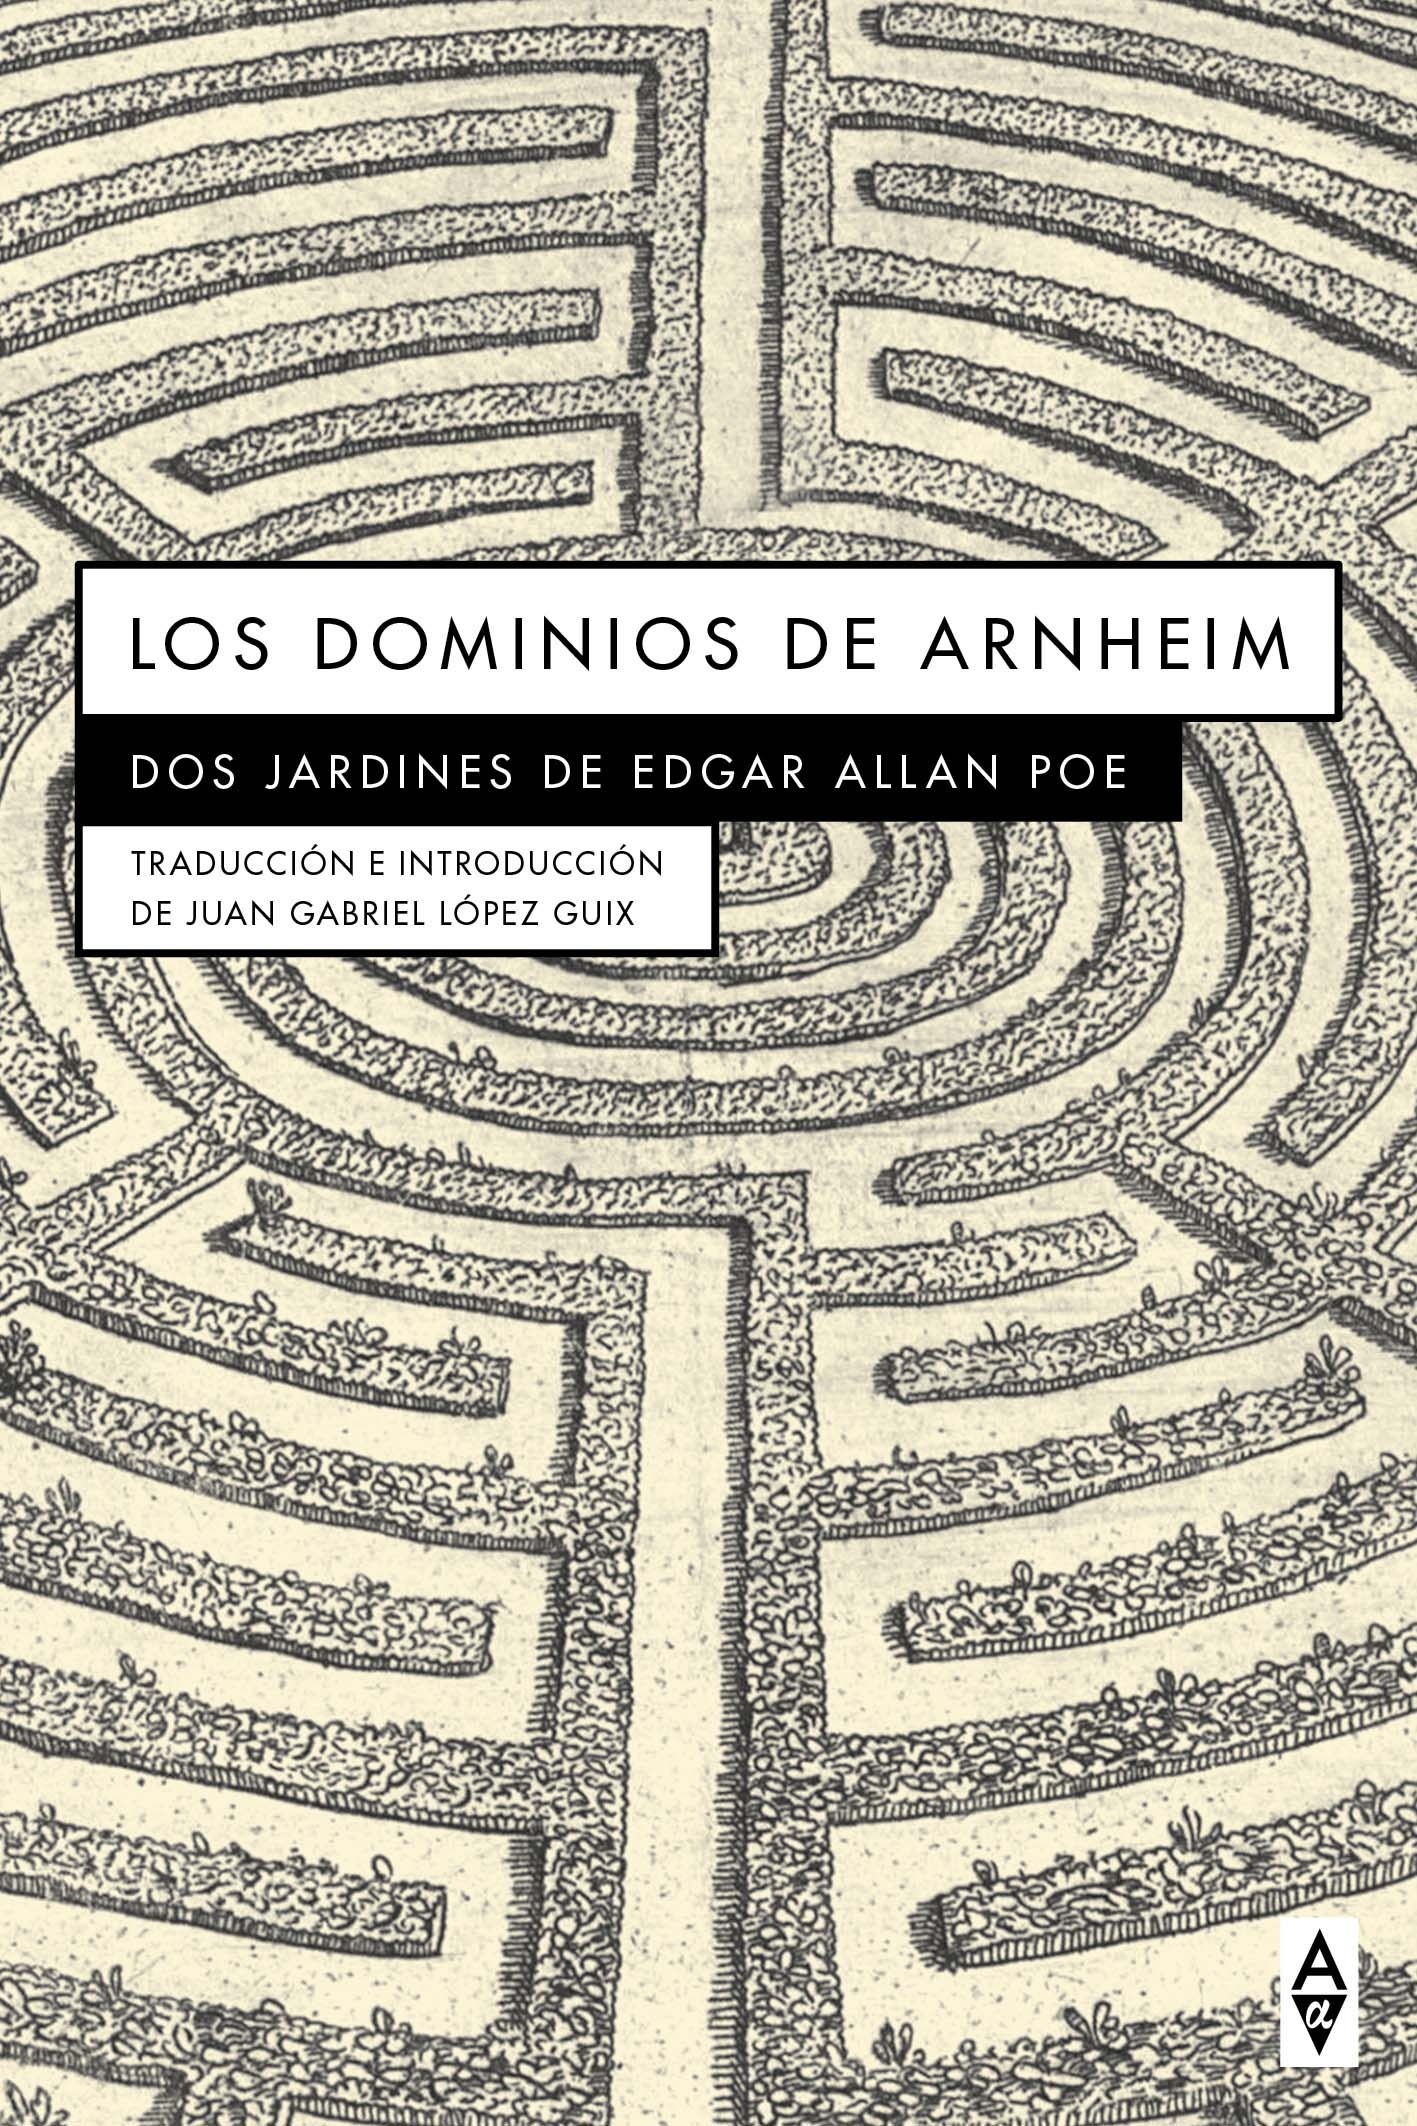 Dominios de Arnheim, Los "Dos jardines de Edgar Allan Poe". 